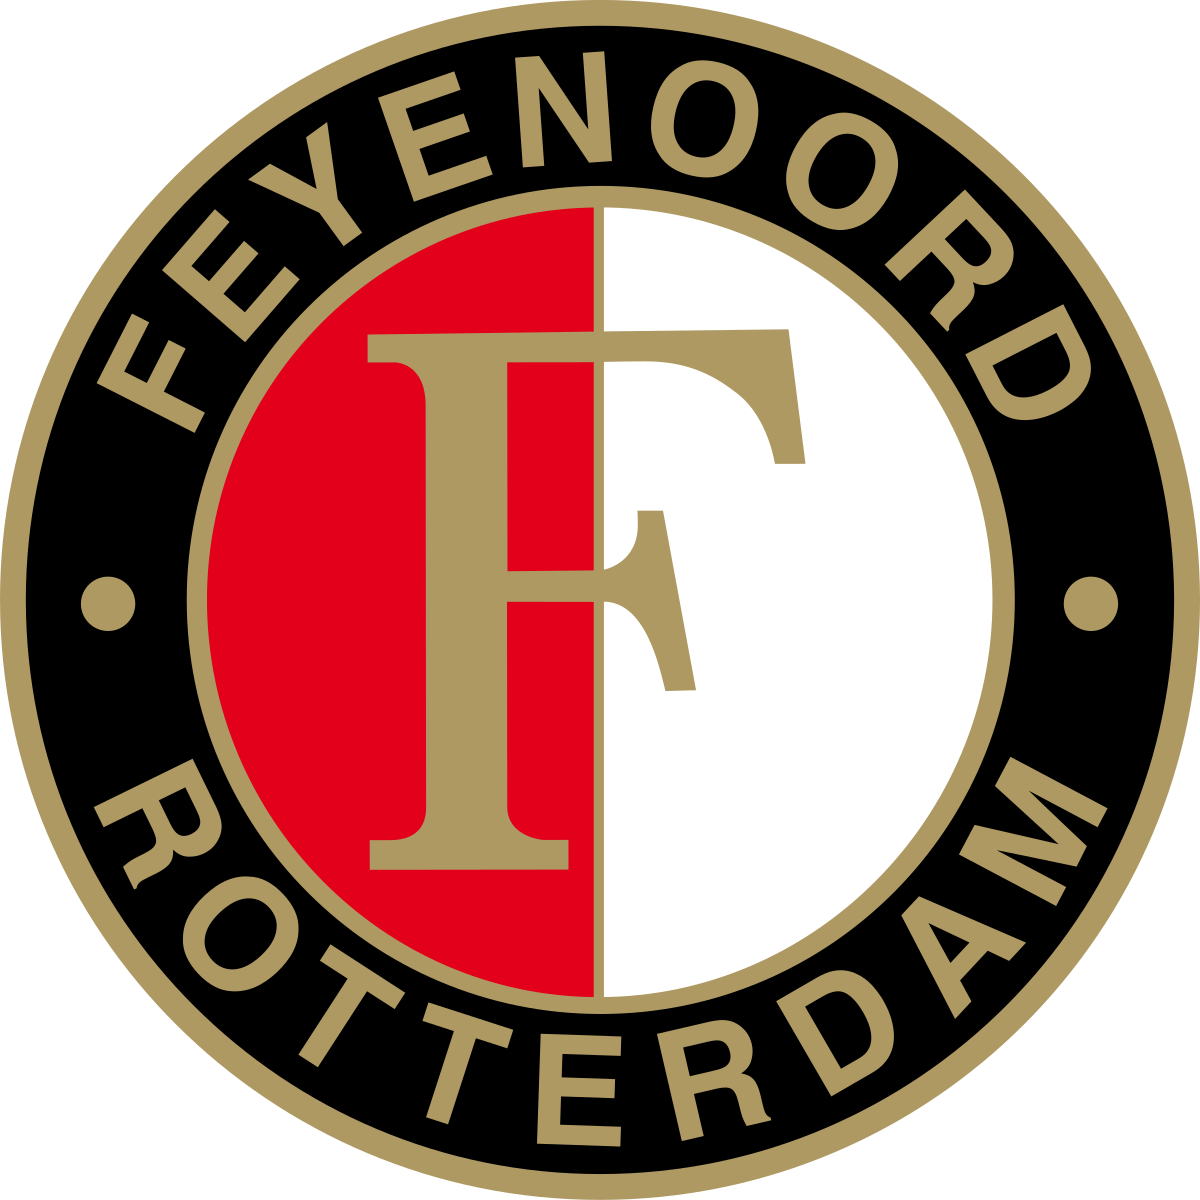 1200px-Feyenoord_logo.svg